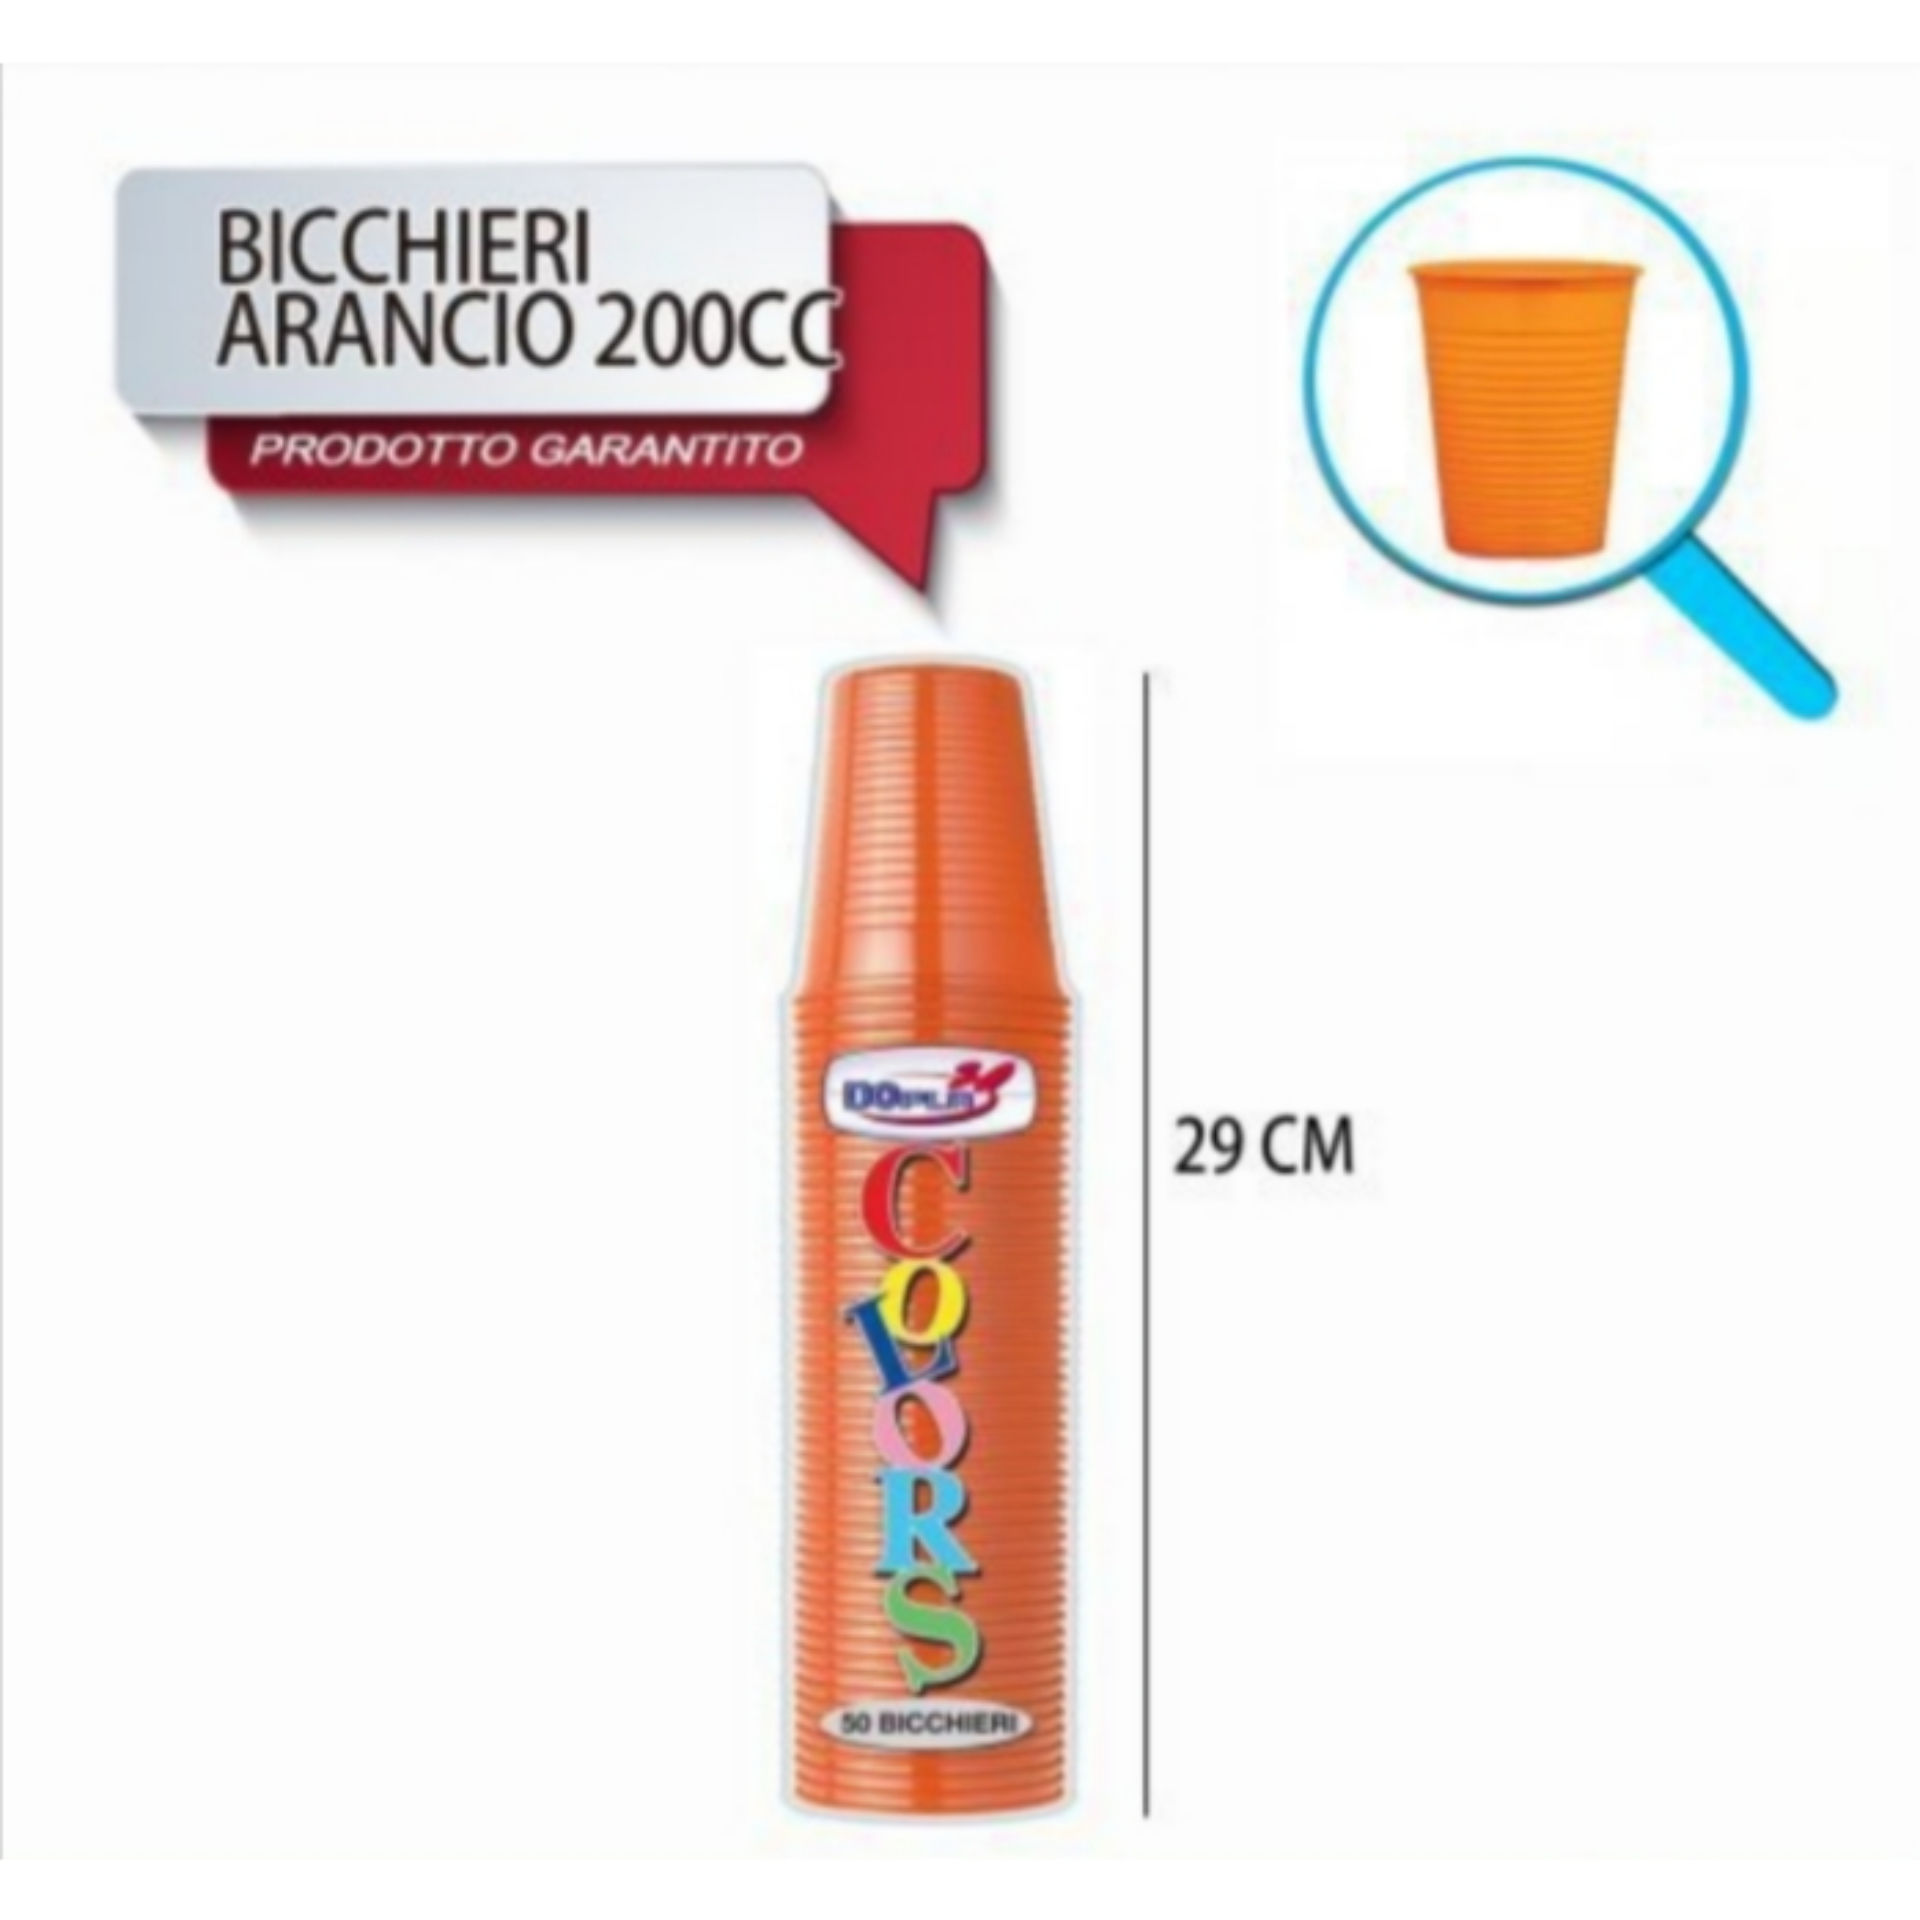 BICCH 200ML R 50PZ ARANCIO DODopla